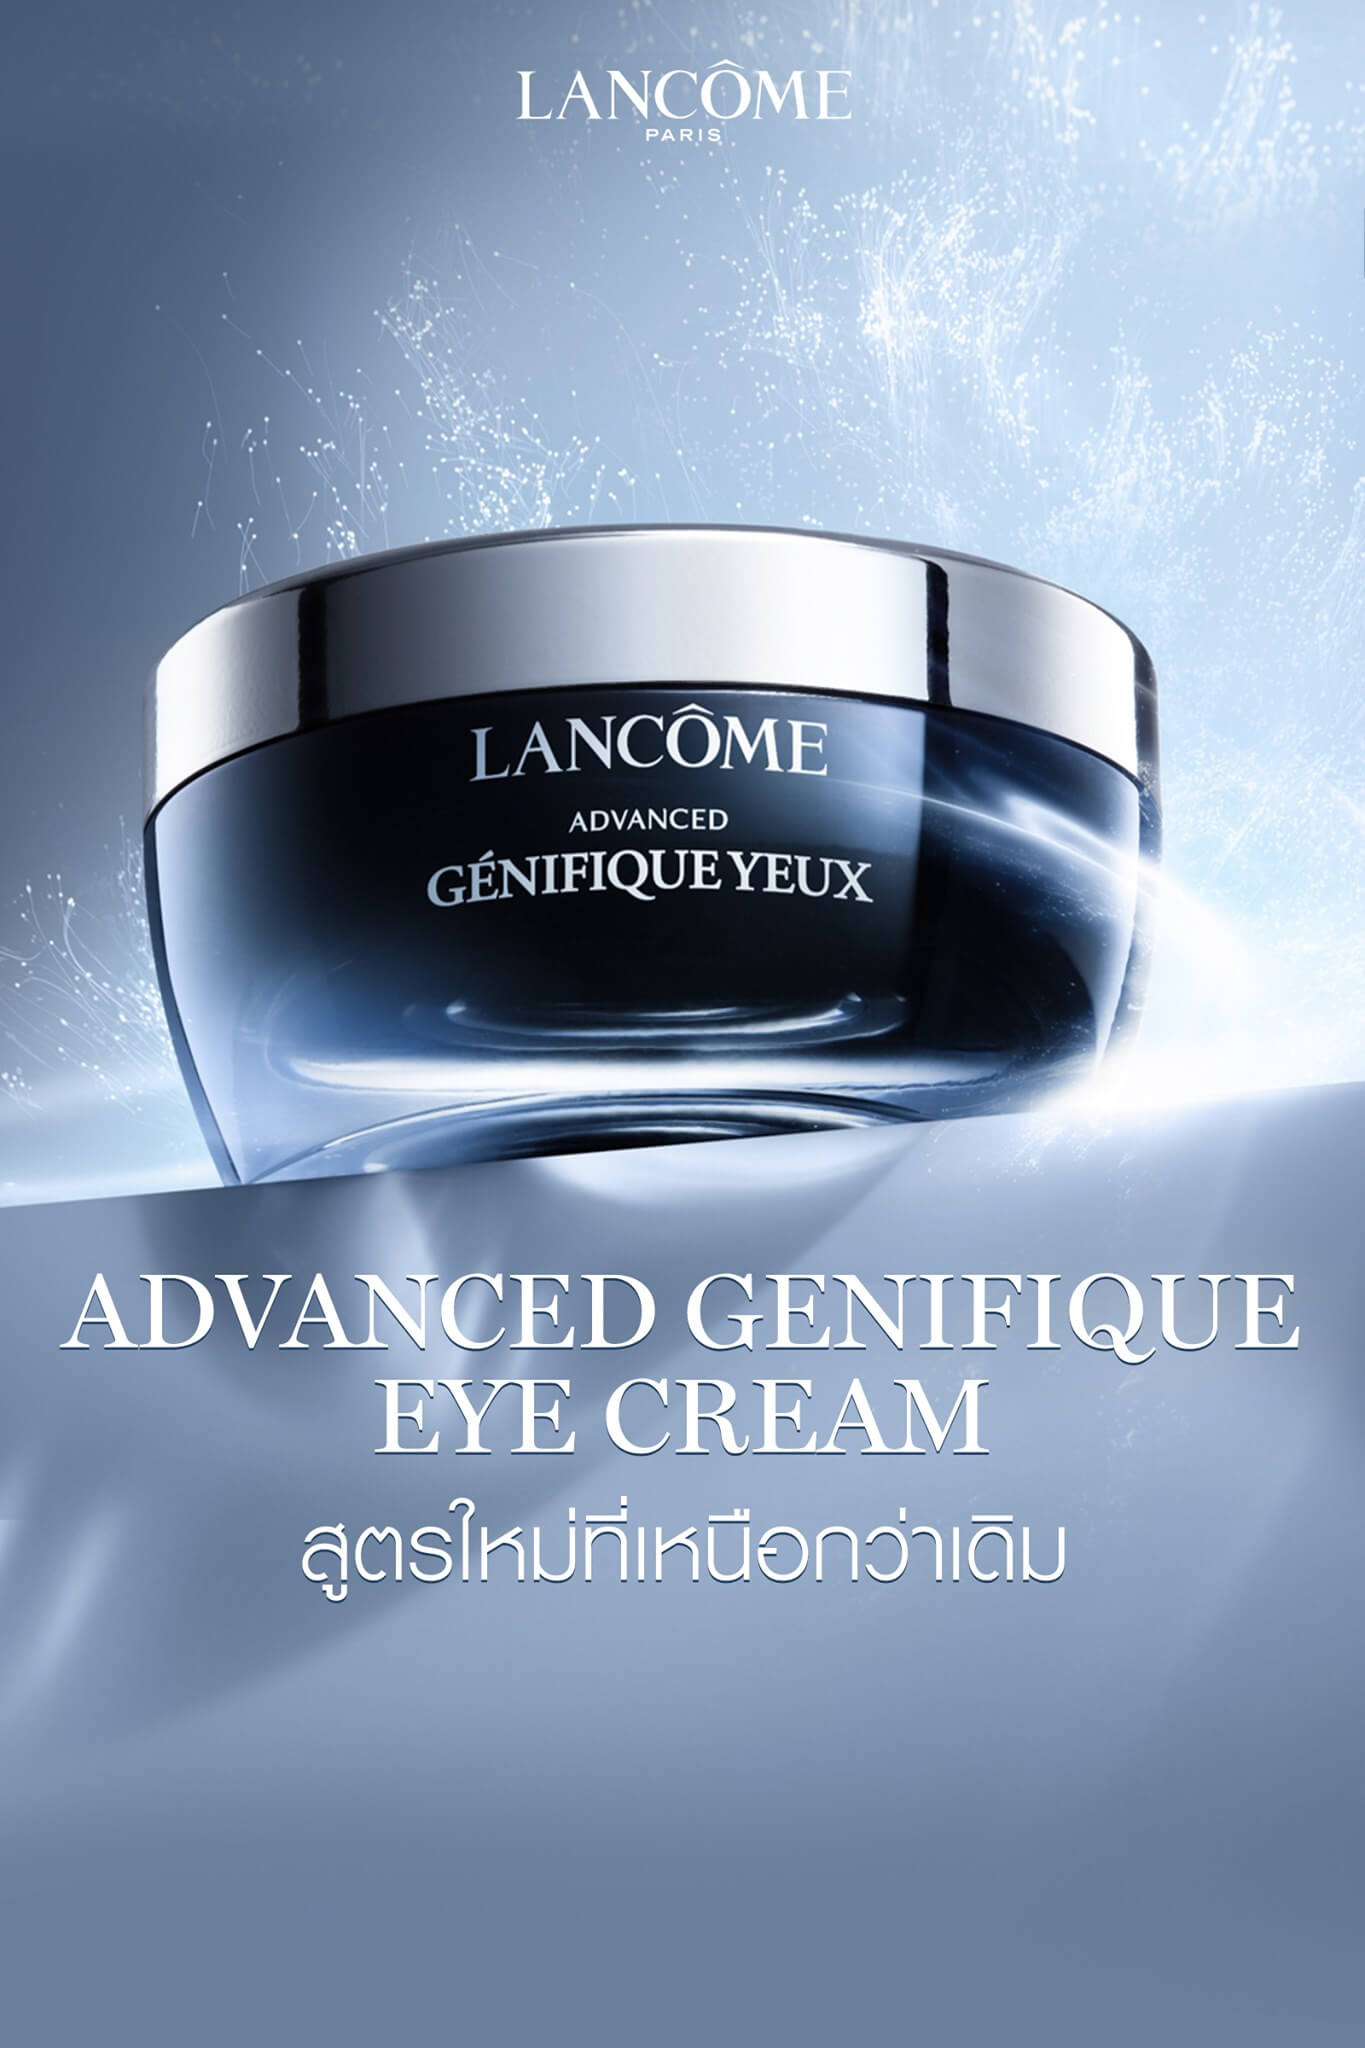 อายครีมสูตรใหม่! New Lancôme Advanced Génifique Eye Cream ผสานศาสตร์ไมโครไบโอม เพื่อผิวรอบดวงตาดูแข็งแรง และเรียบเนียน ช่วยลดเลือนริ้วรอยและกระชับผิวบริเวณรอบดวงตา